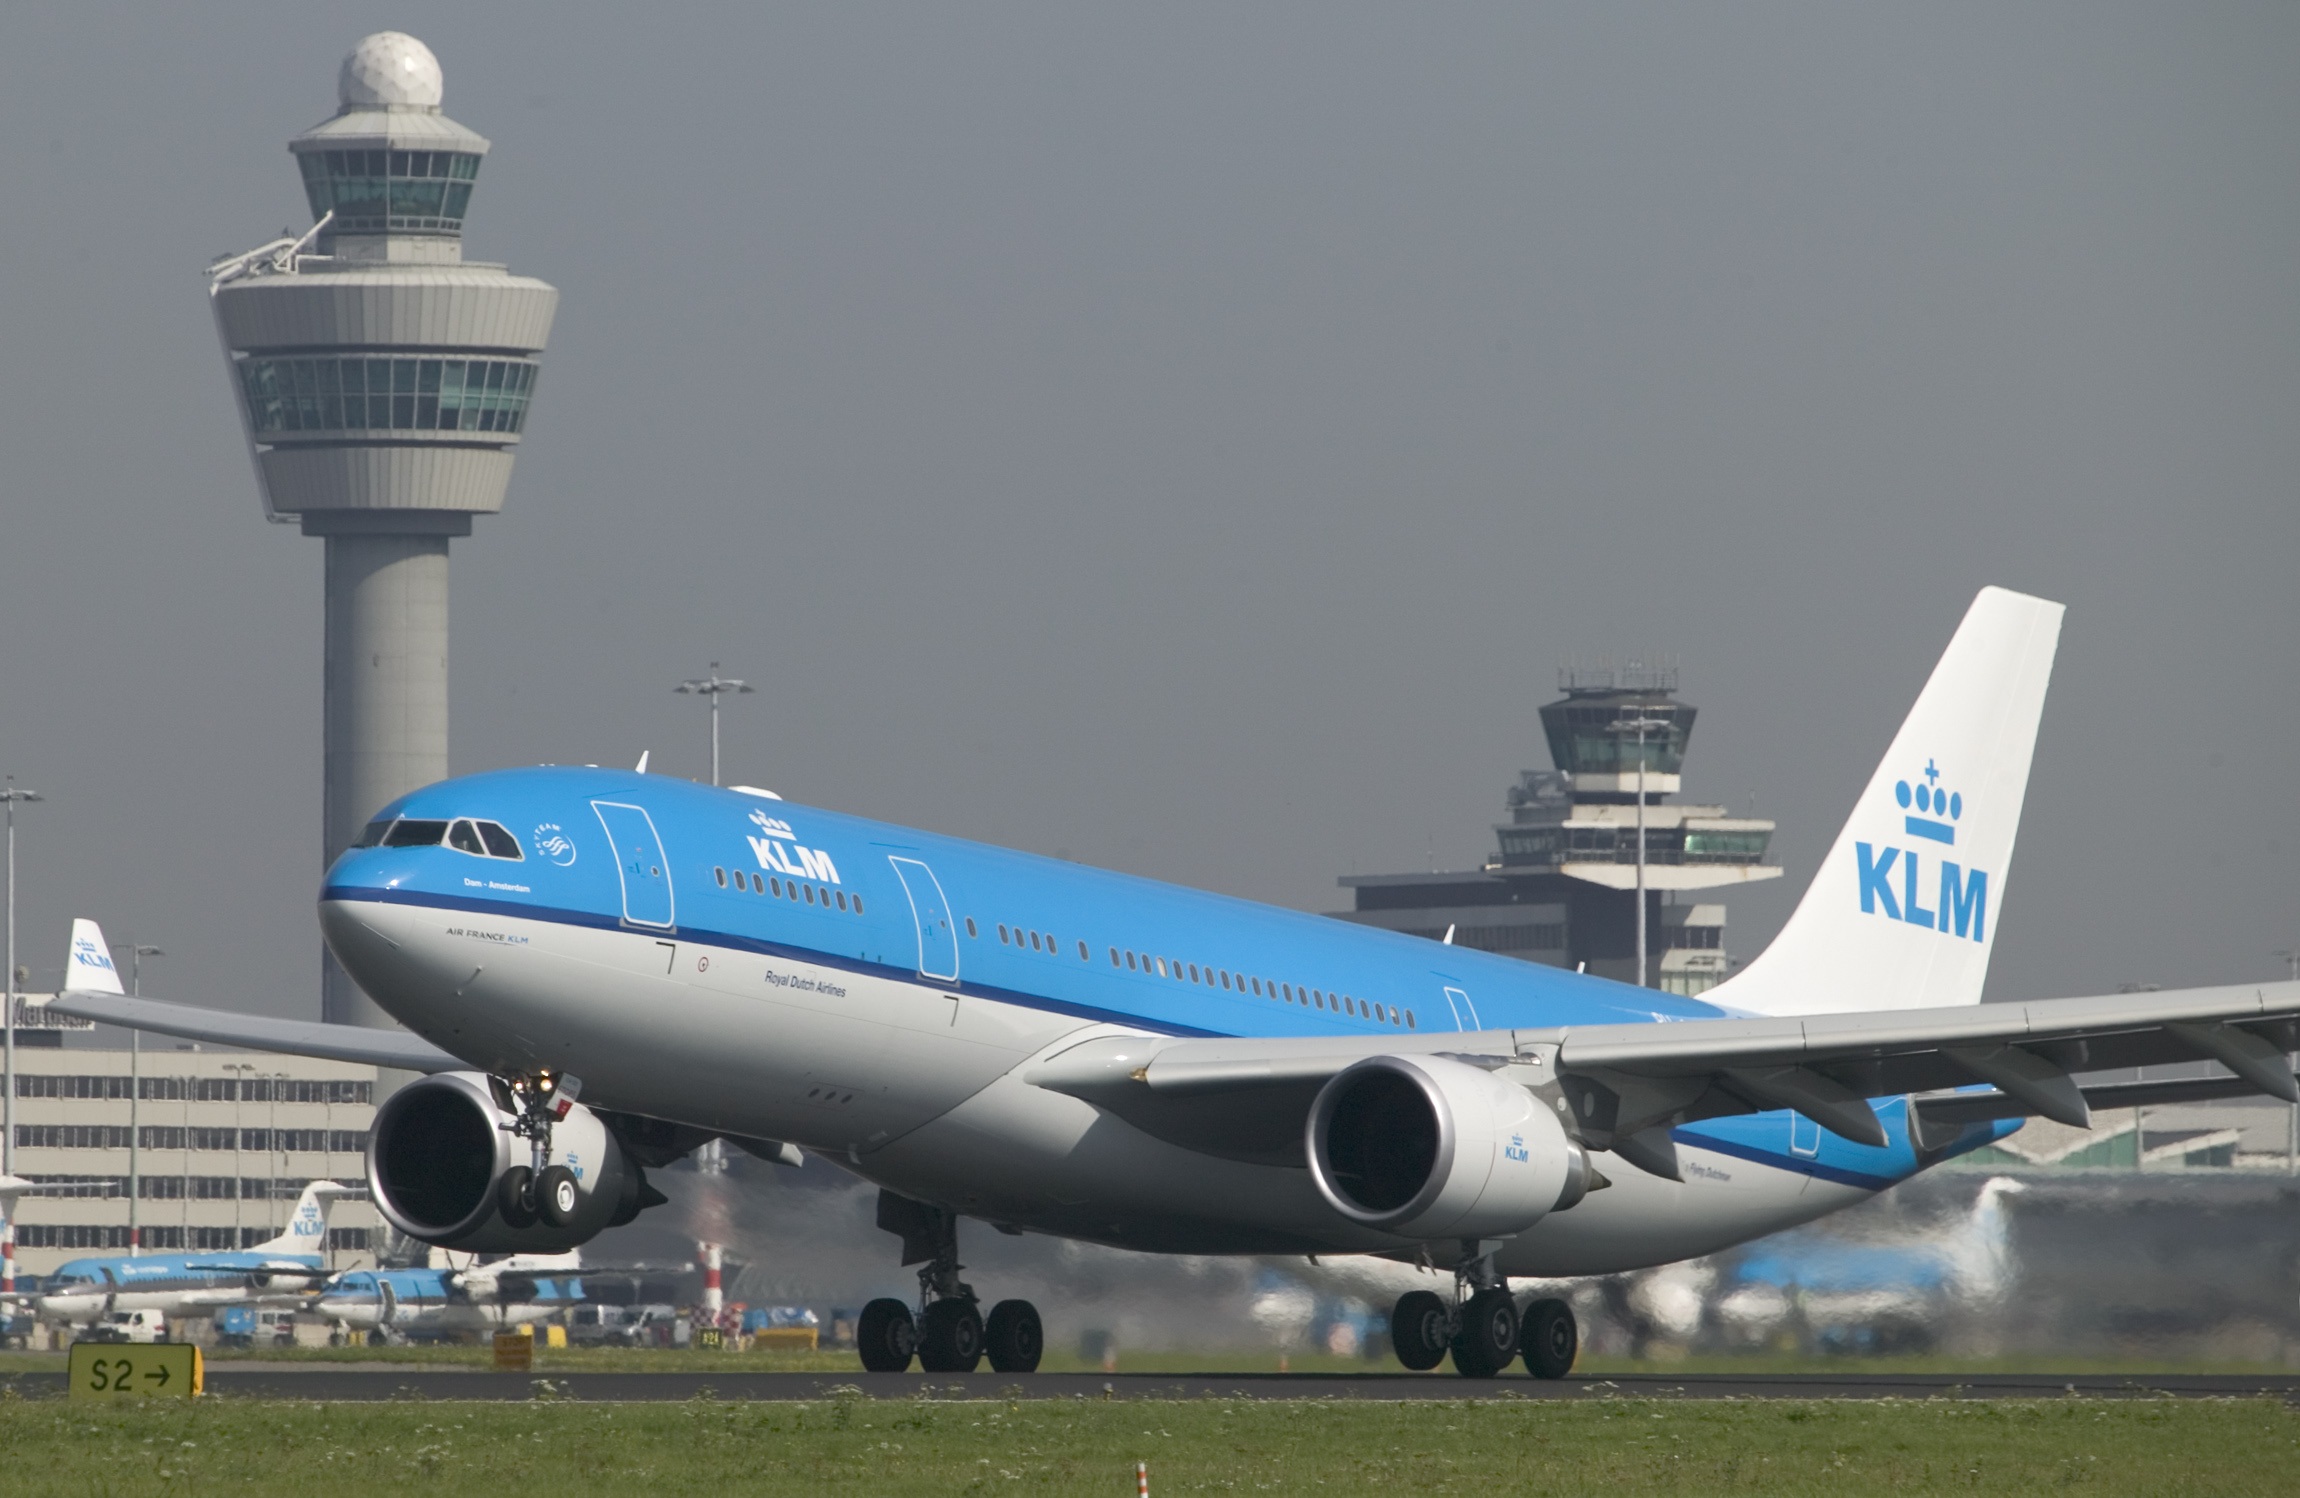 PRZEGLĄD PROMOCJI: oferta KLM do 15 października (Azja)